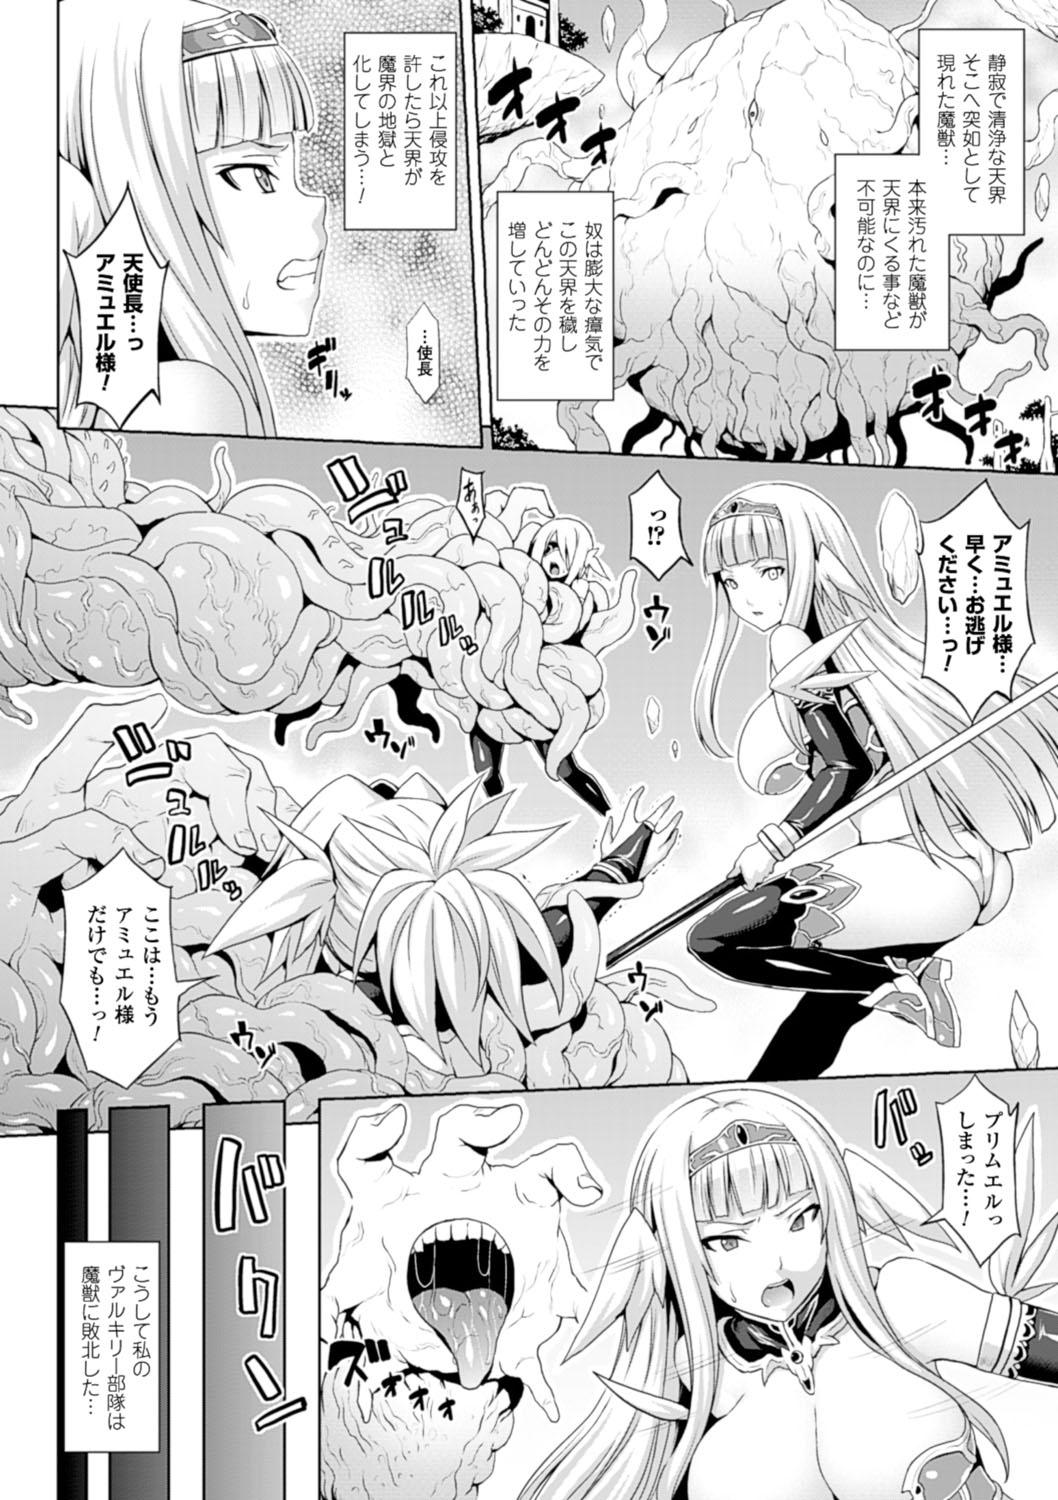 Cuckolding Angel Fall: Tengoku e to Ochiru Otome-tachi Mas - Page 5